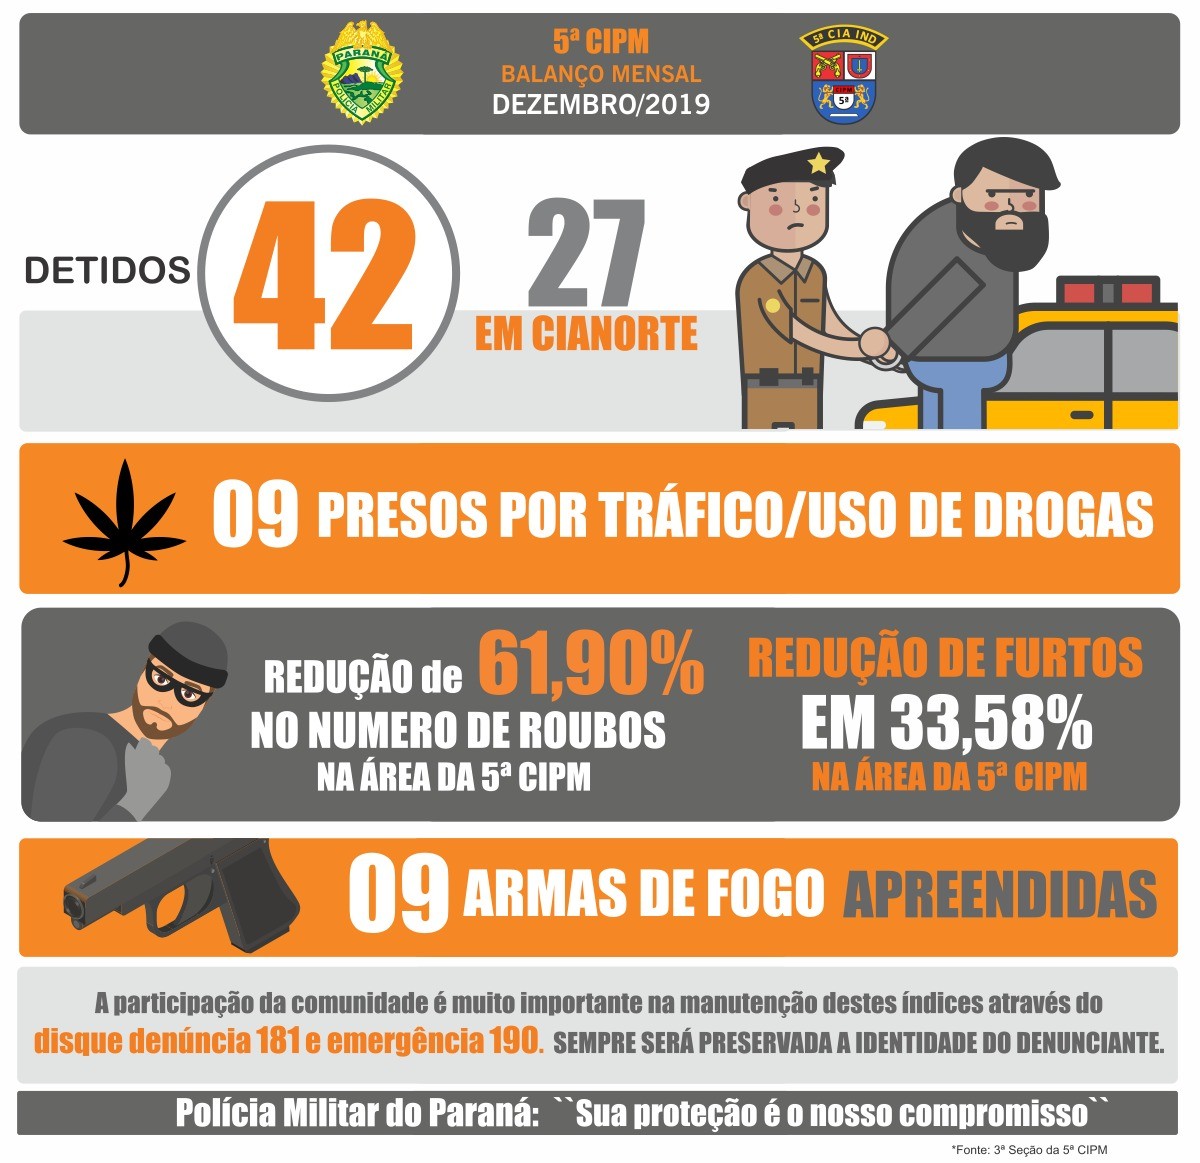 Foto: Divulgação/PM